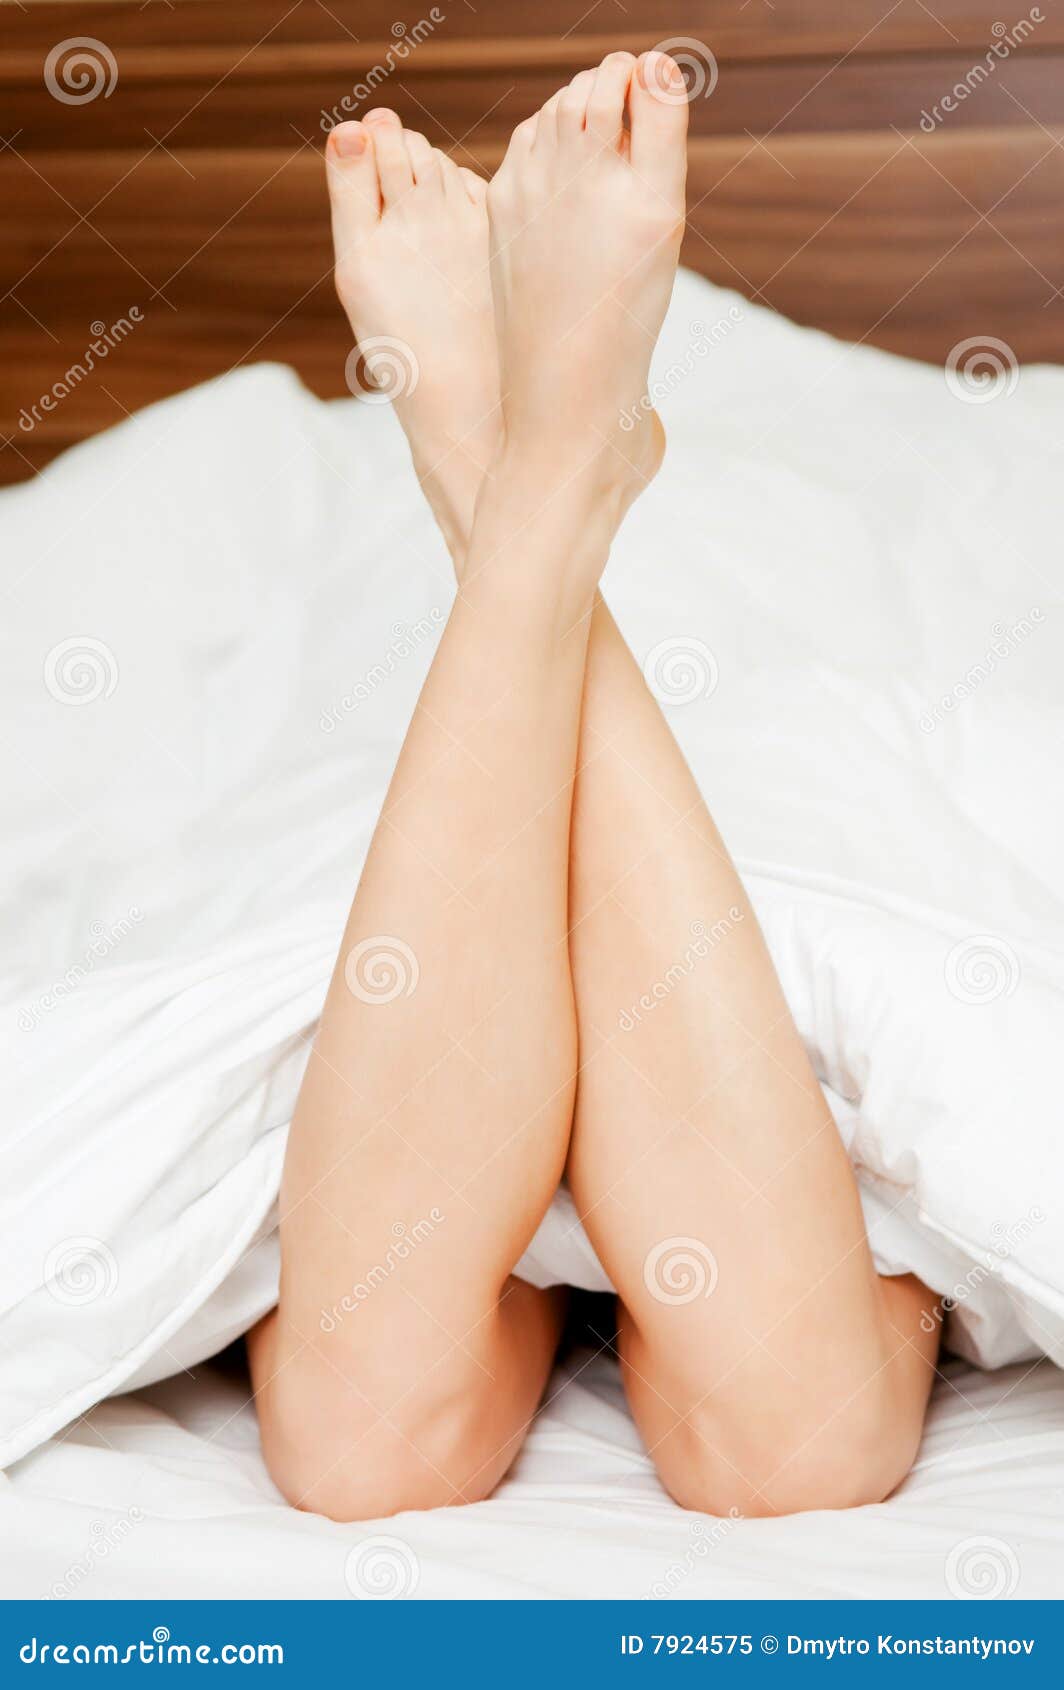 Бедра в постели. Ноги девушки в кровати. Женские ноги лежа. Красивые стопы девушек в кровати. Ножки для кровати.